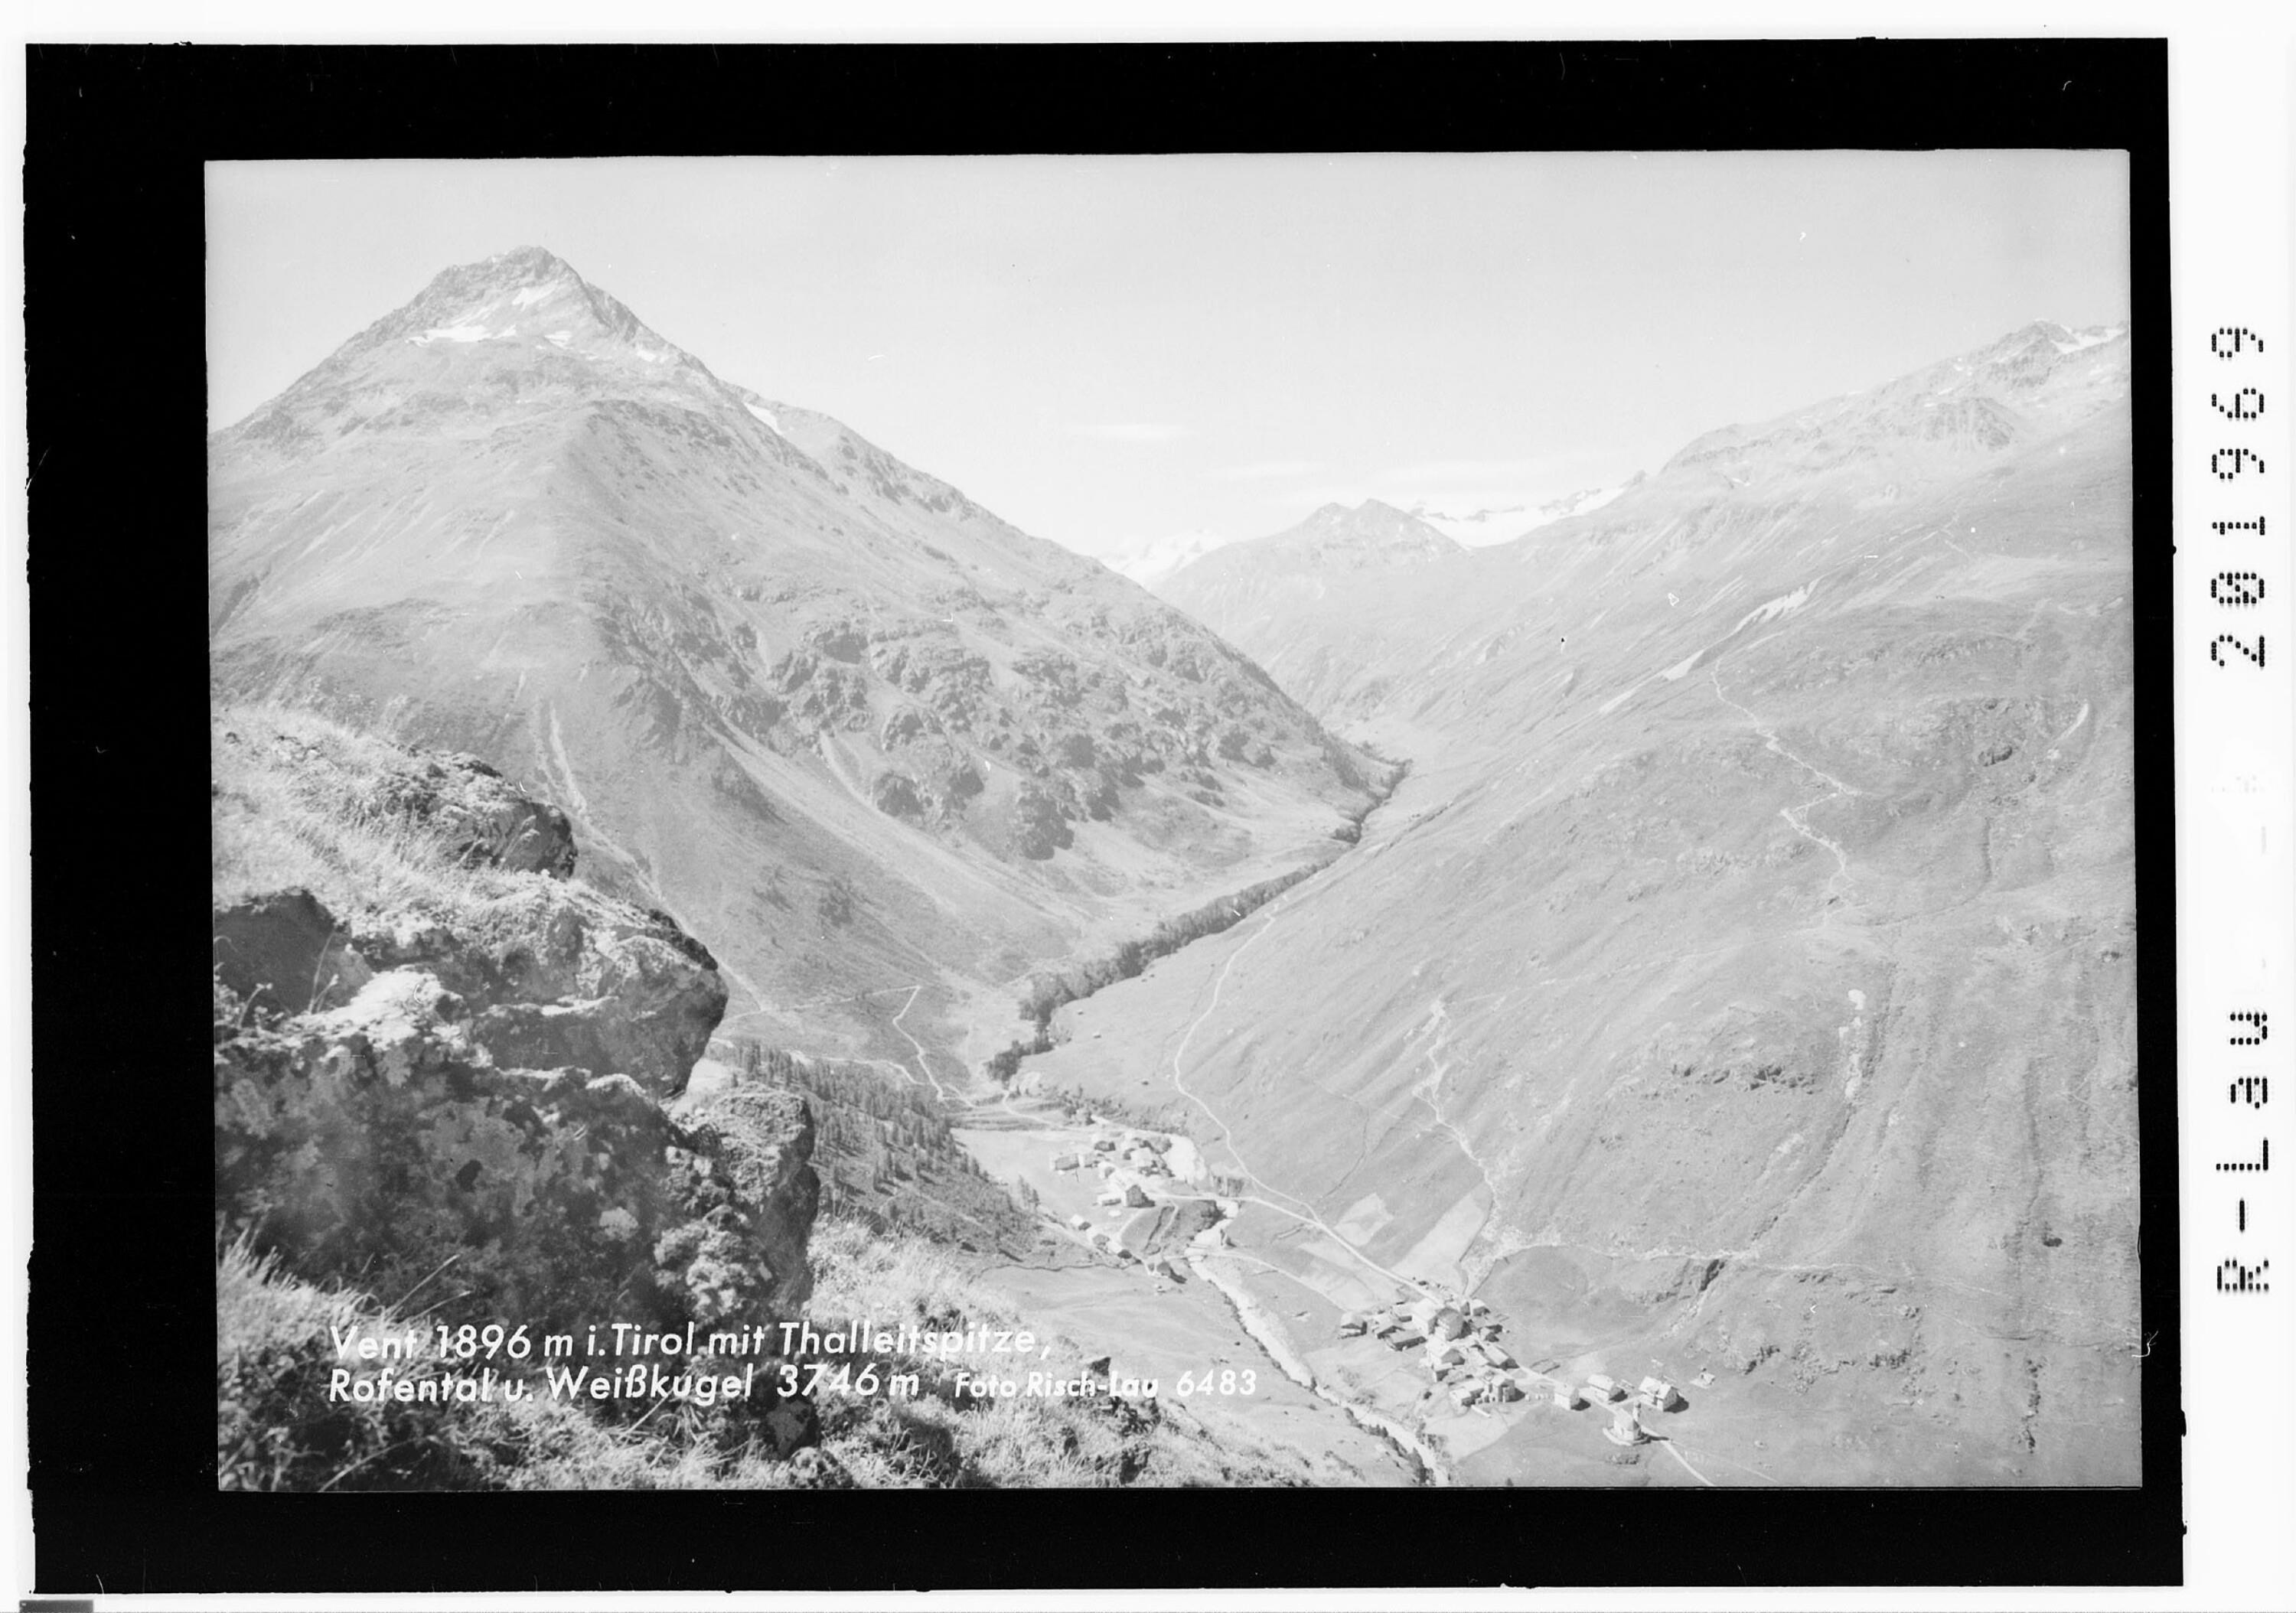 Vent 1896 m in Tirol mit Thalleitspitze - Rofental und Weisskugel 3746 m></div>


    <hr>
    <div class=